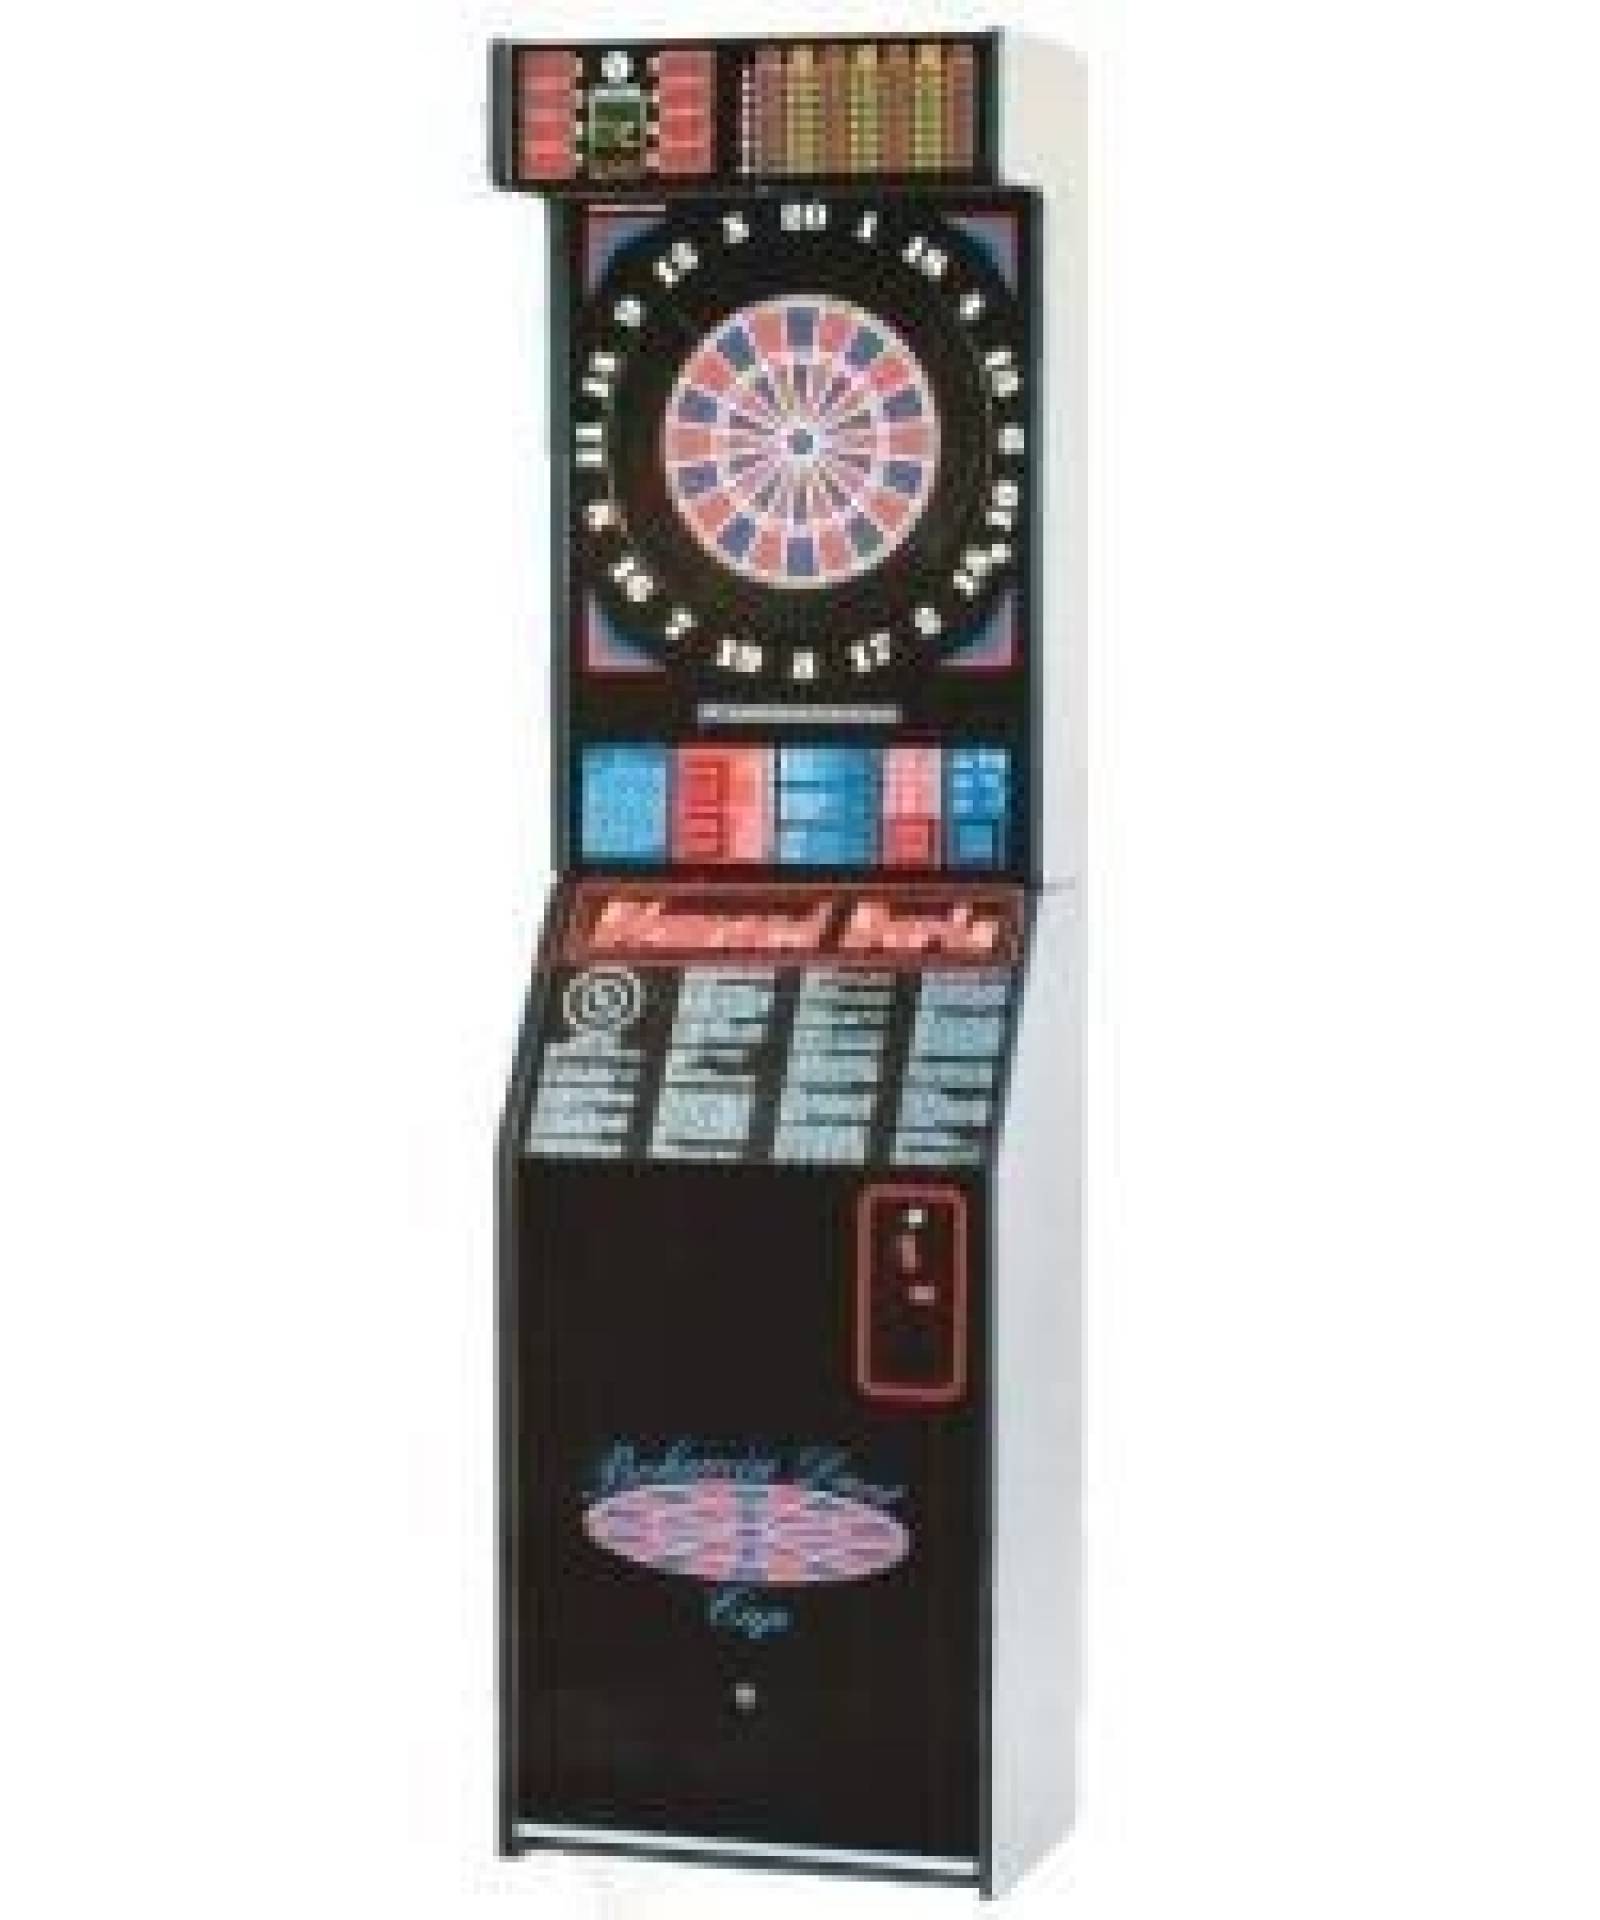 Šipkový automat Diamond Darts